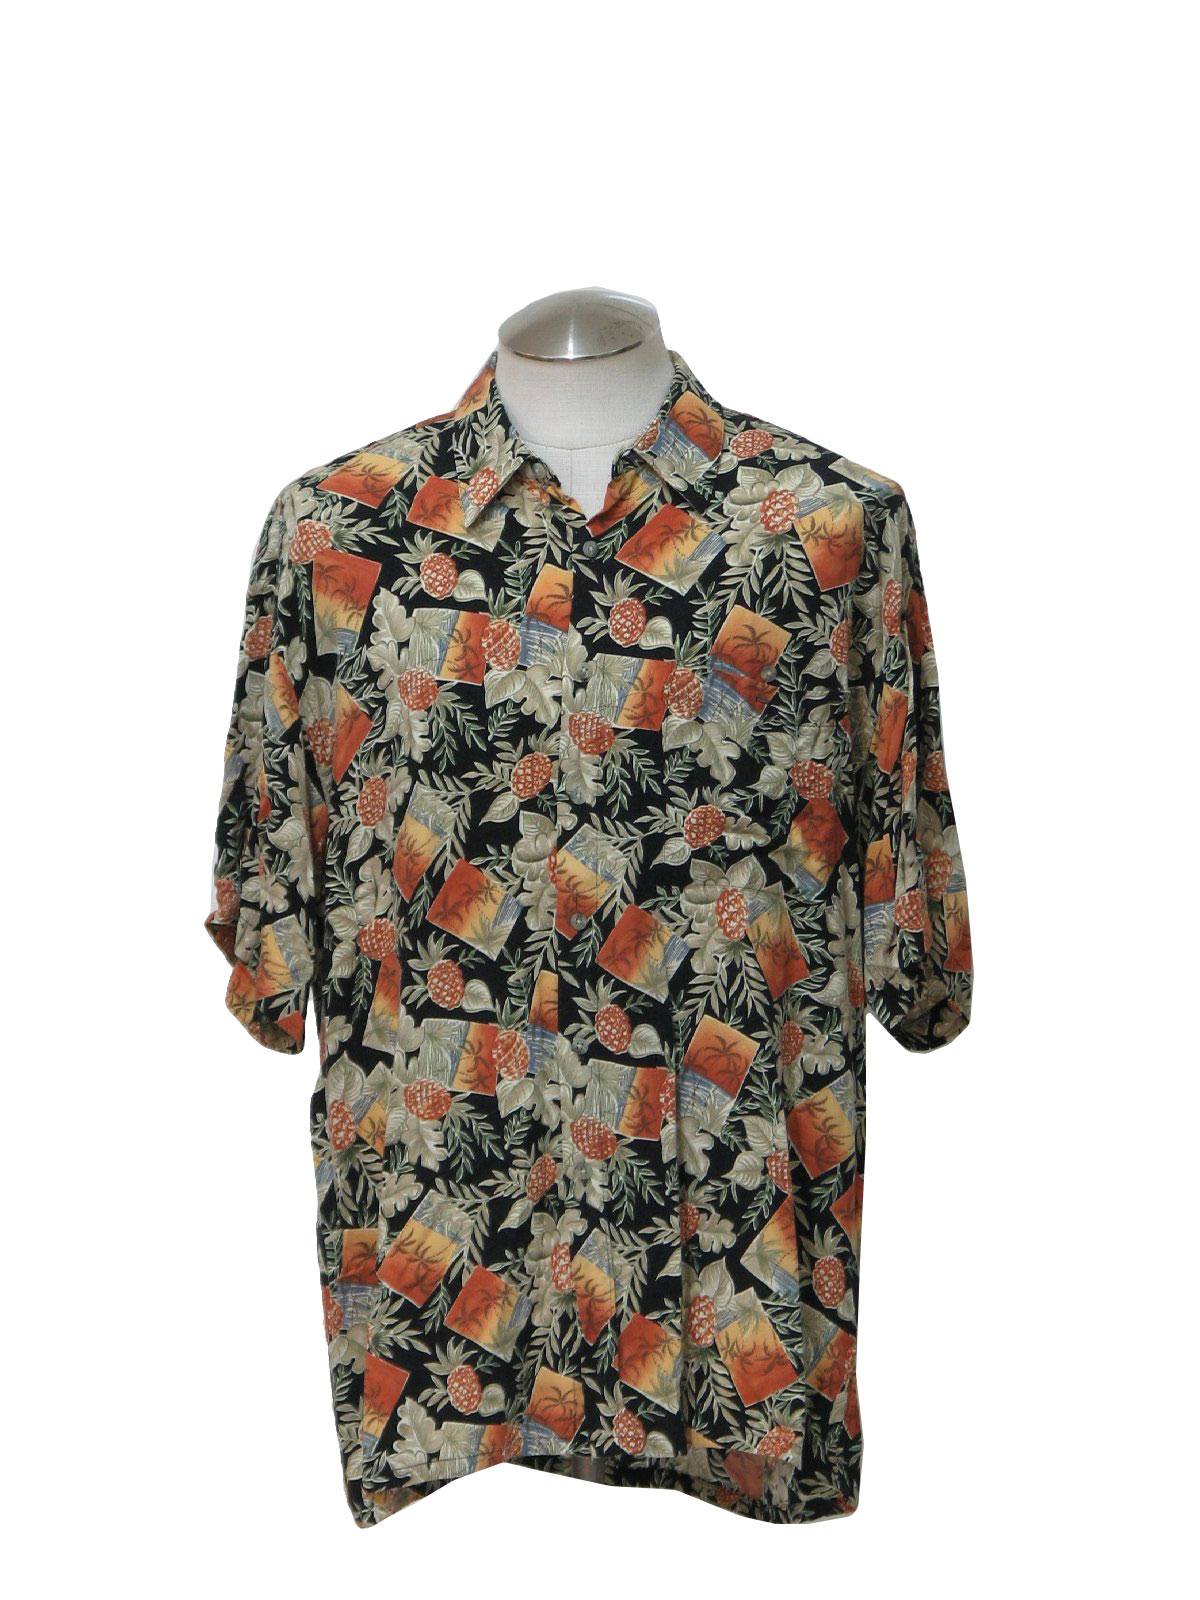 Pierre Cardin 90's Vintage Hawaiian Shirt: 90s -Pierre Cardin- Mens ...